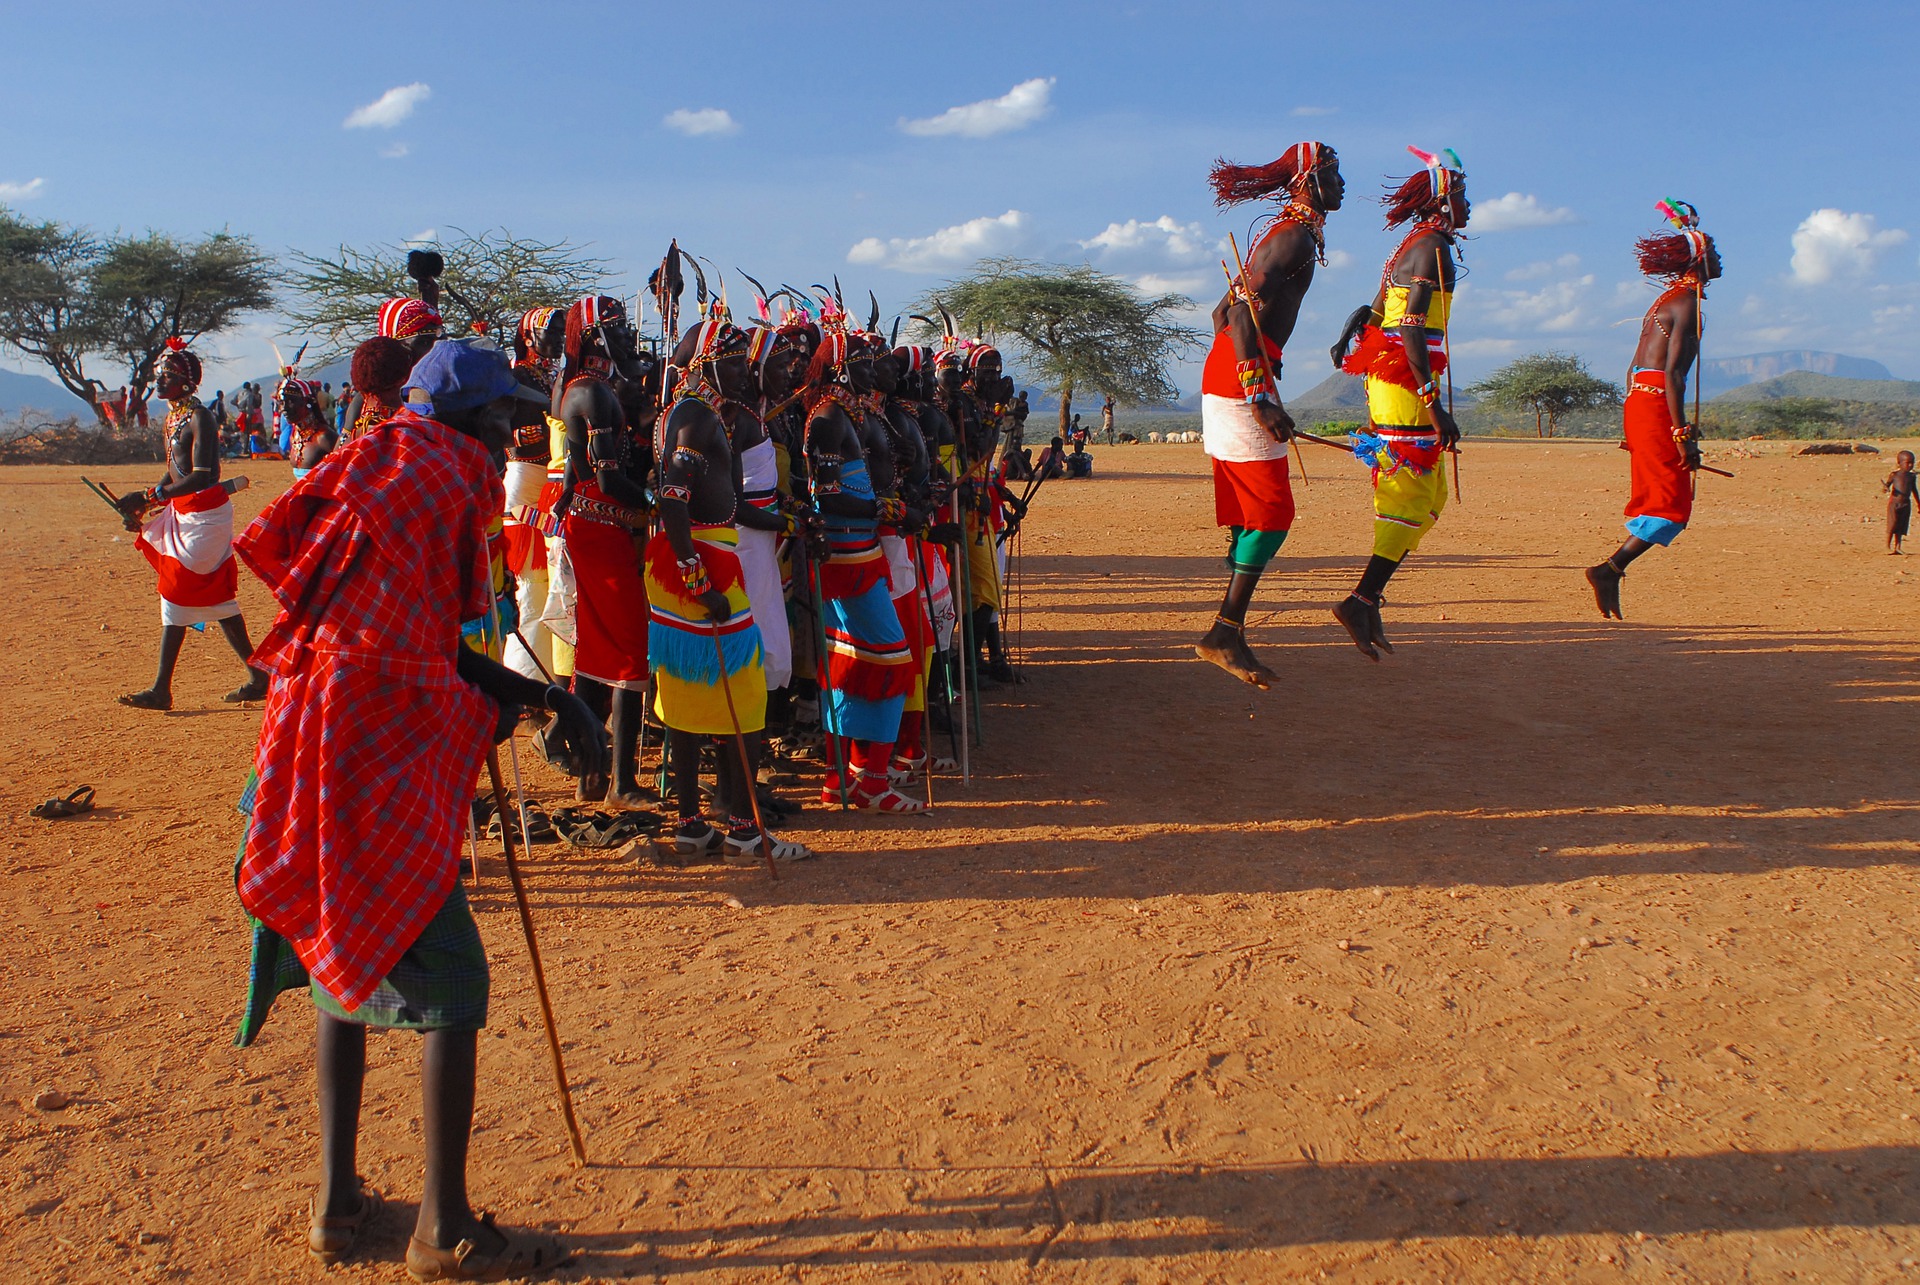 Masai Culture